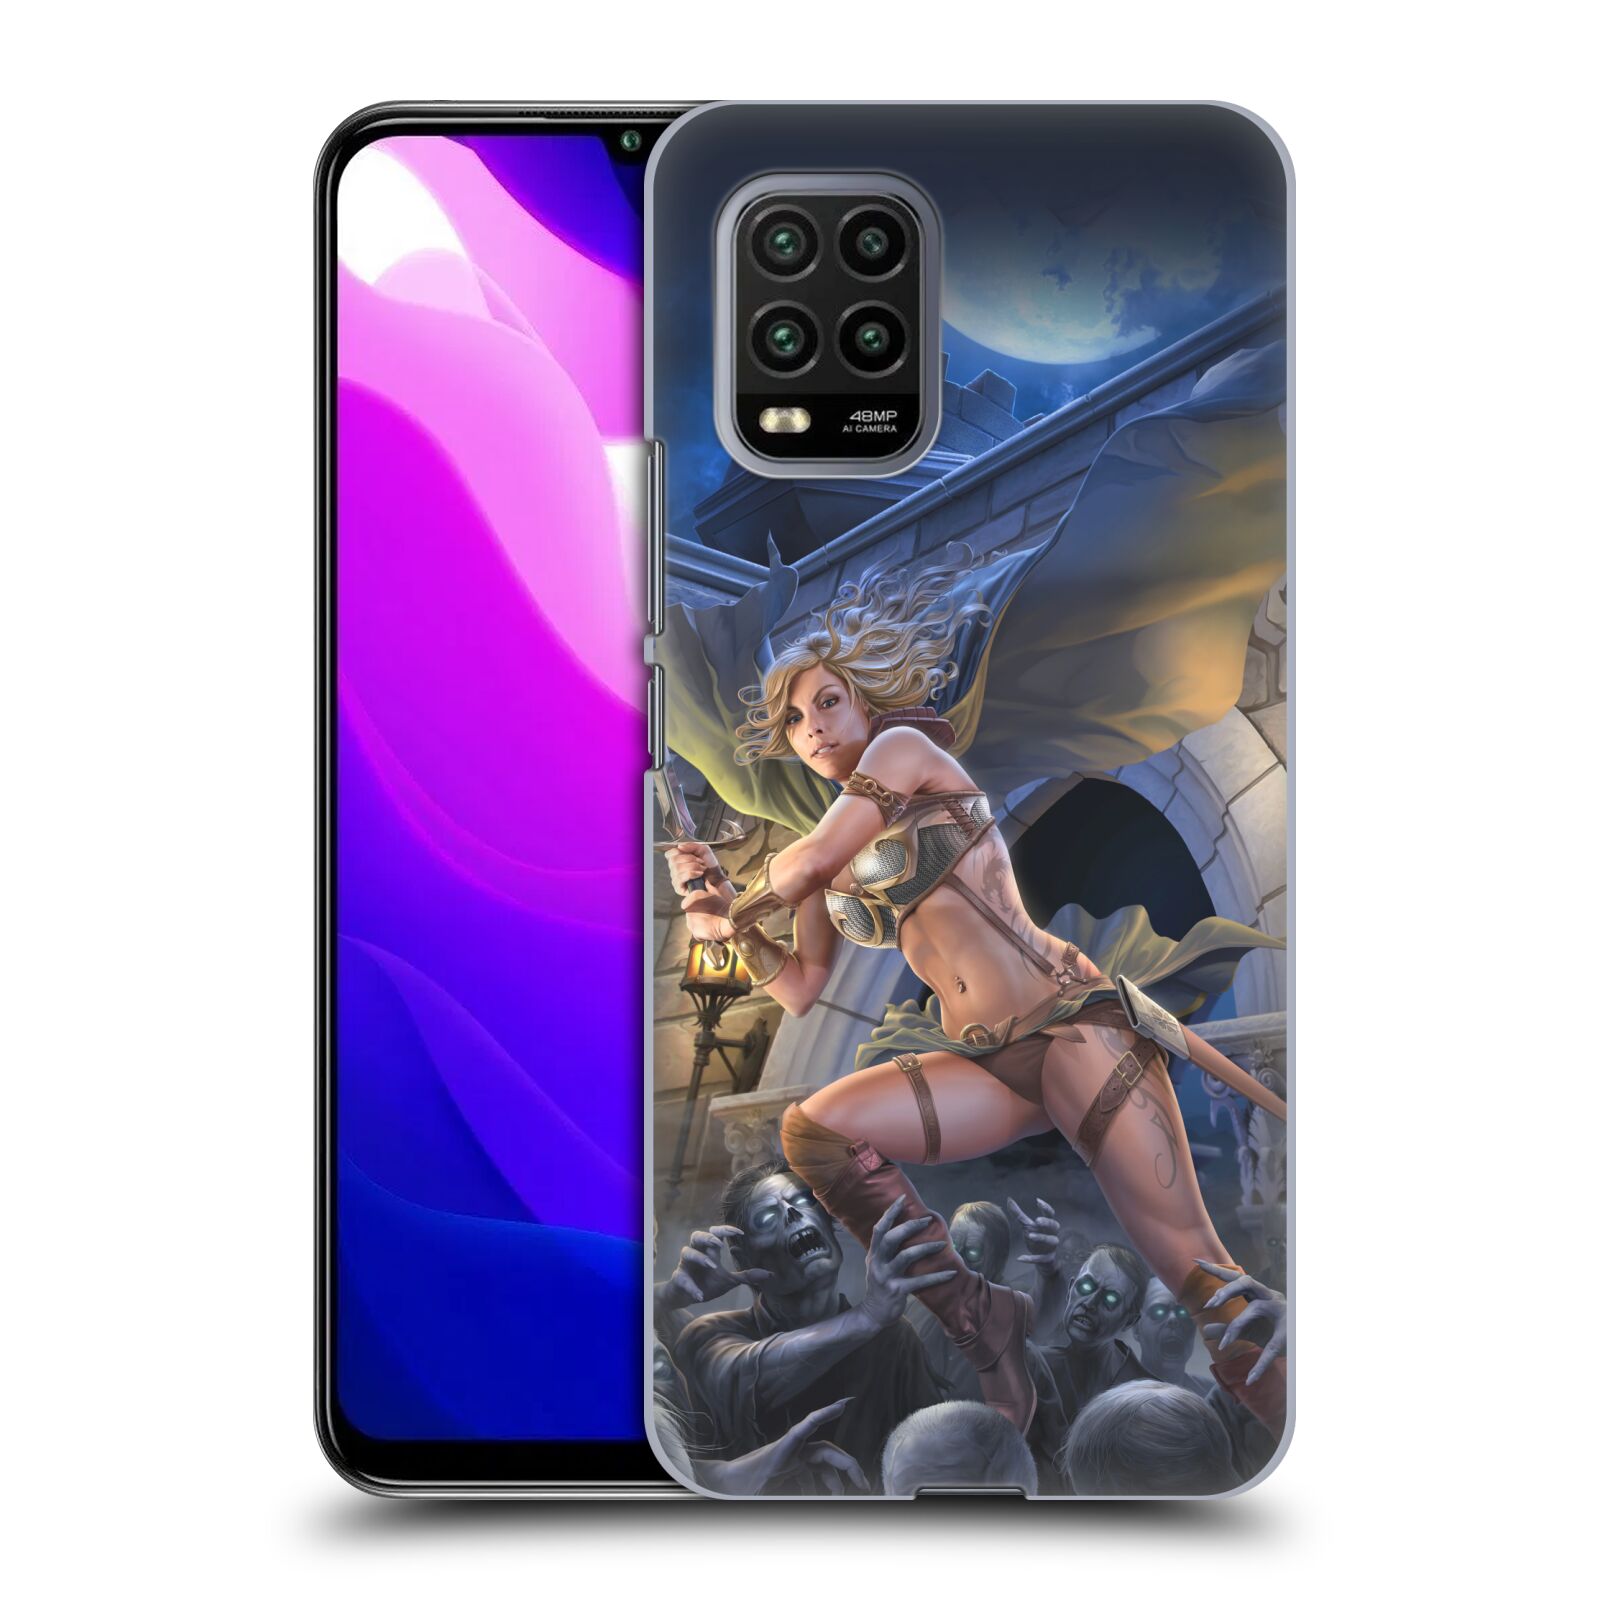 Pouzdro na mobil Xiaomi  Mi 10 LITE / Mi 10 LITE 5G - HEAD CASE - Fantasy kresby Tom Wood - Princezna bojovnice a zombies